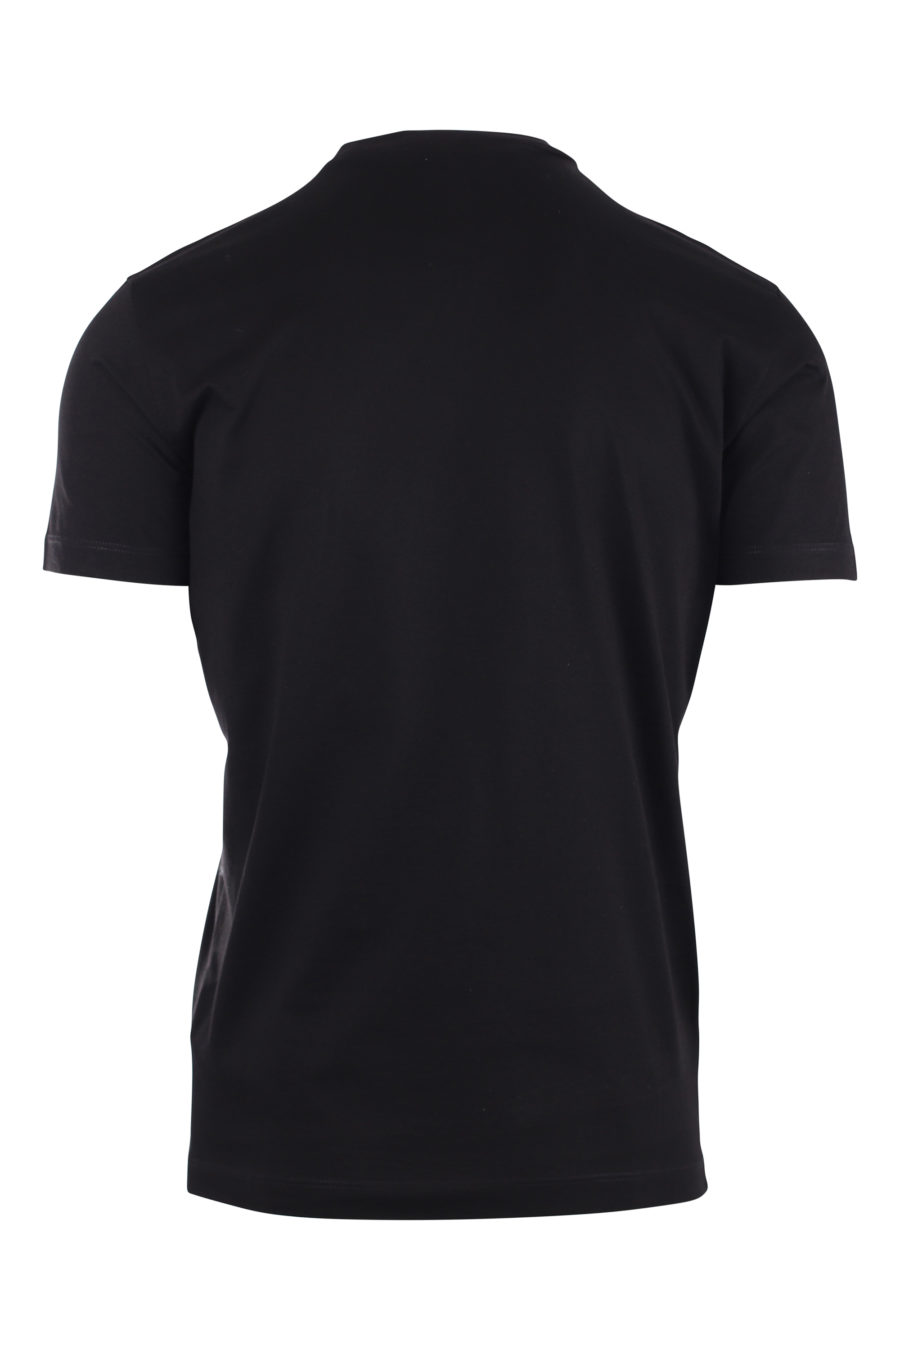 Camiseta negra con logo construcción - IMG 9715